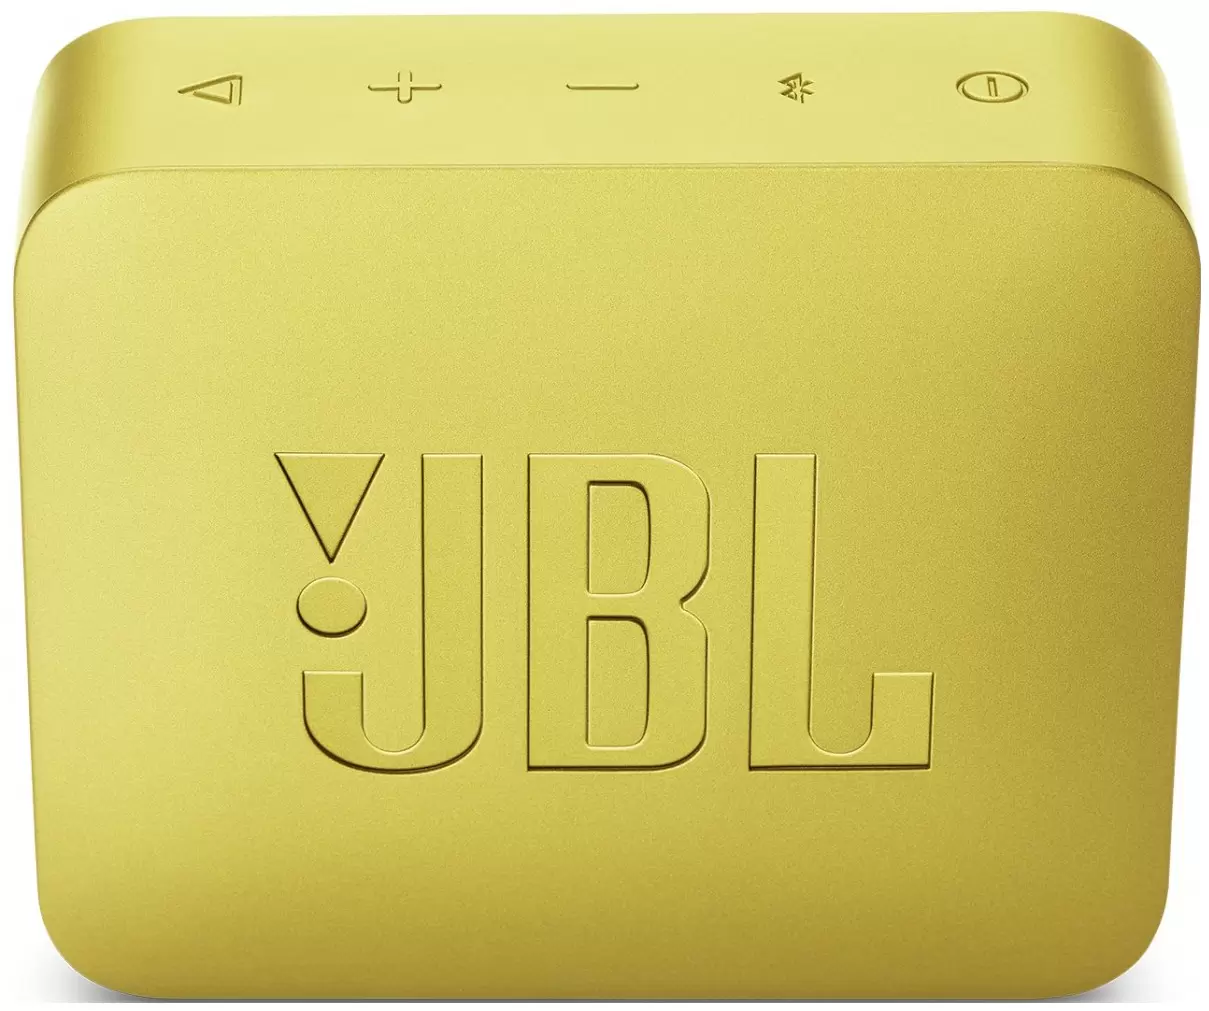 Портативная колонка JBL GO 2 Желтый в Челябинске купить по недорогим ценам с доставкой